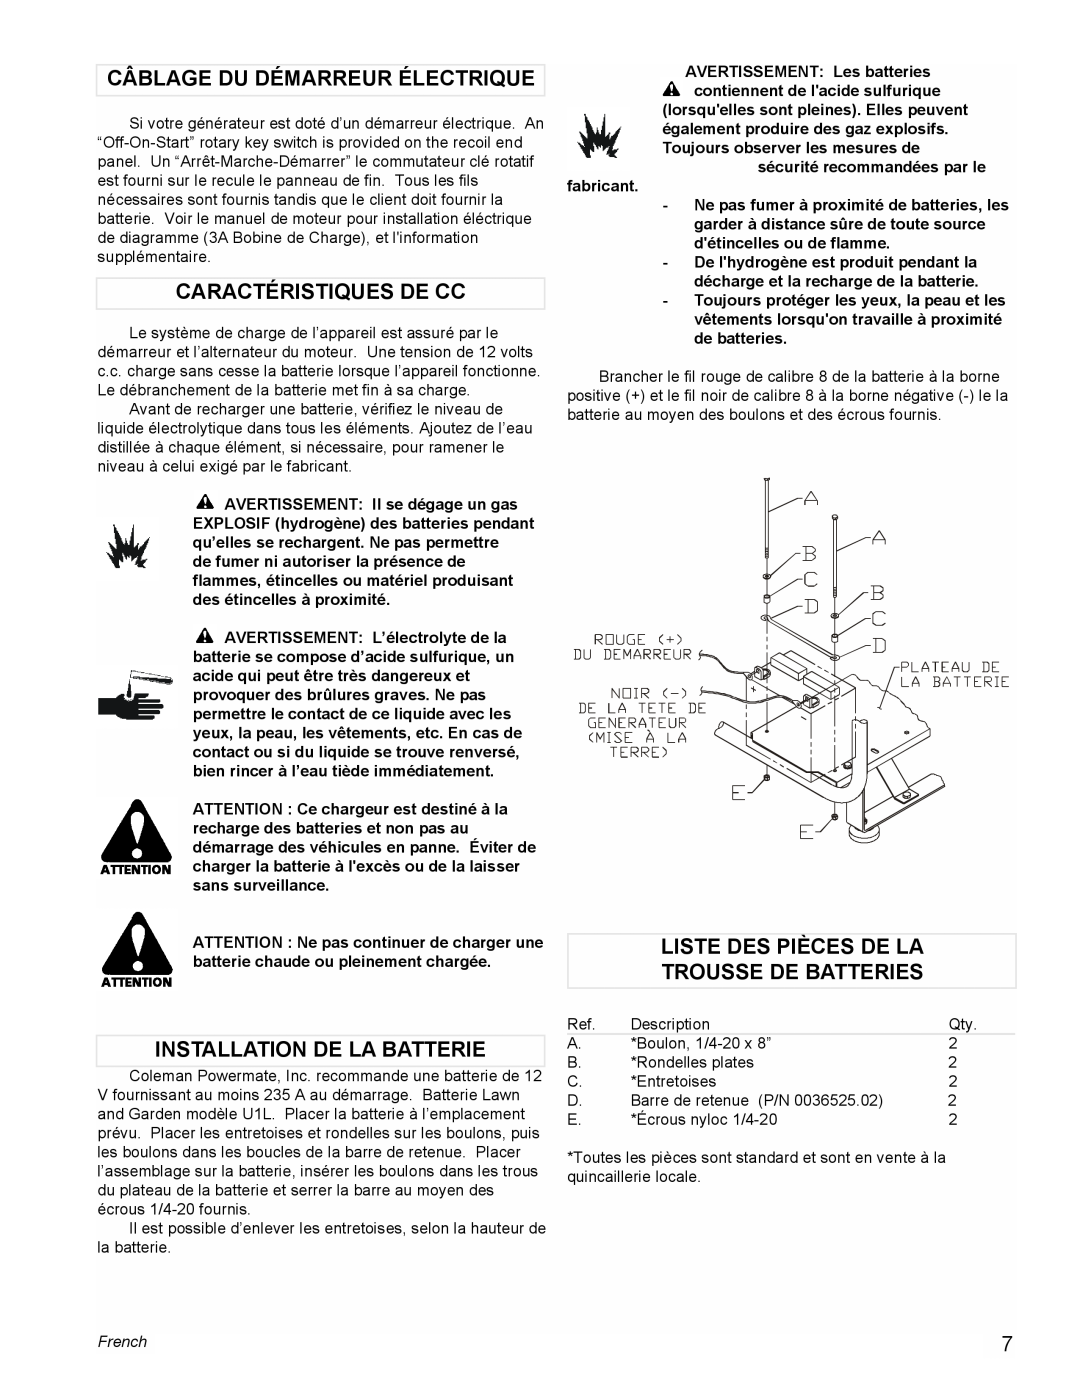 Coleman PM0601100 manual Câblage Du Démarreur Électrique, Caractéristiques De Cc, Installation De La Batterie, French 